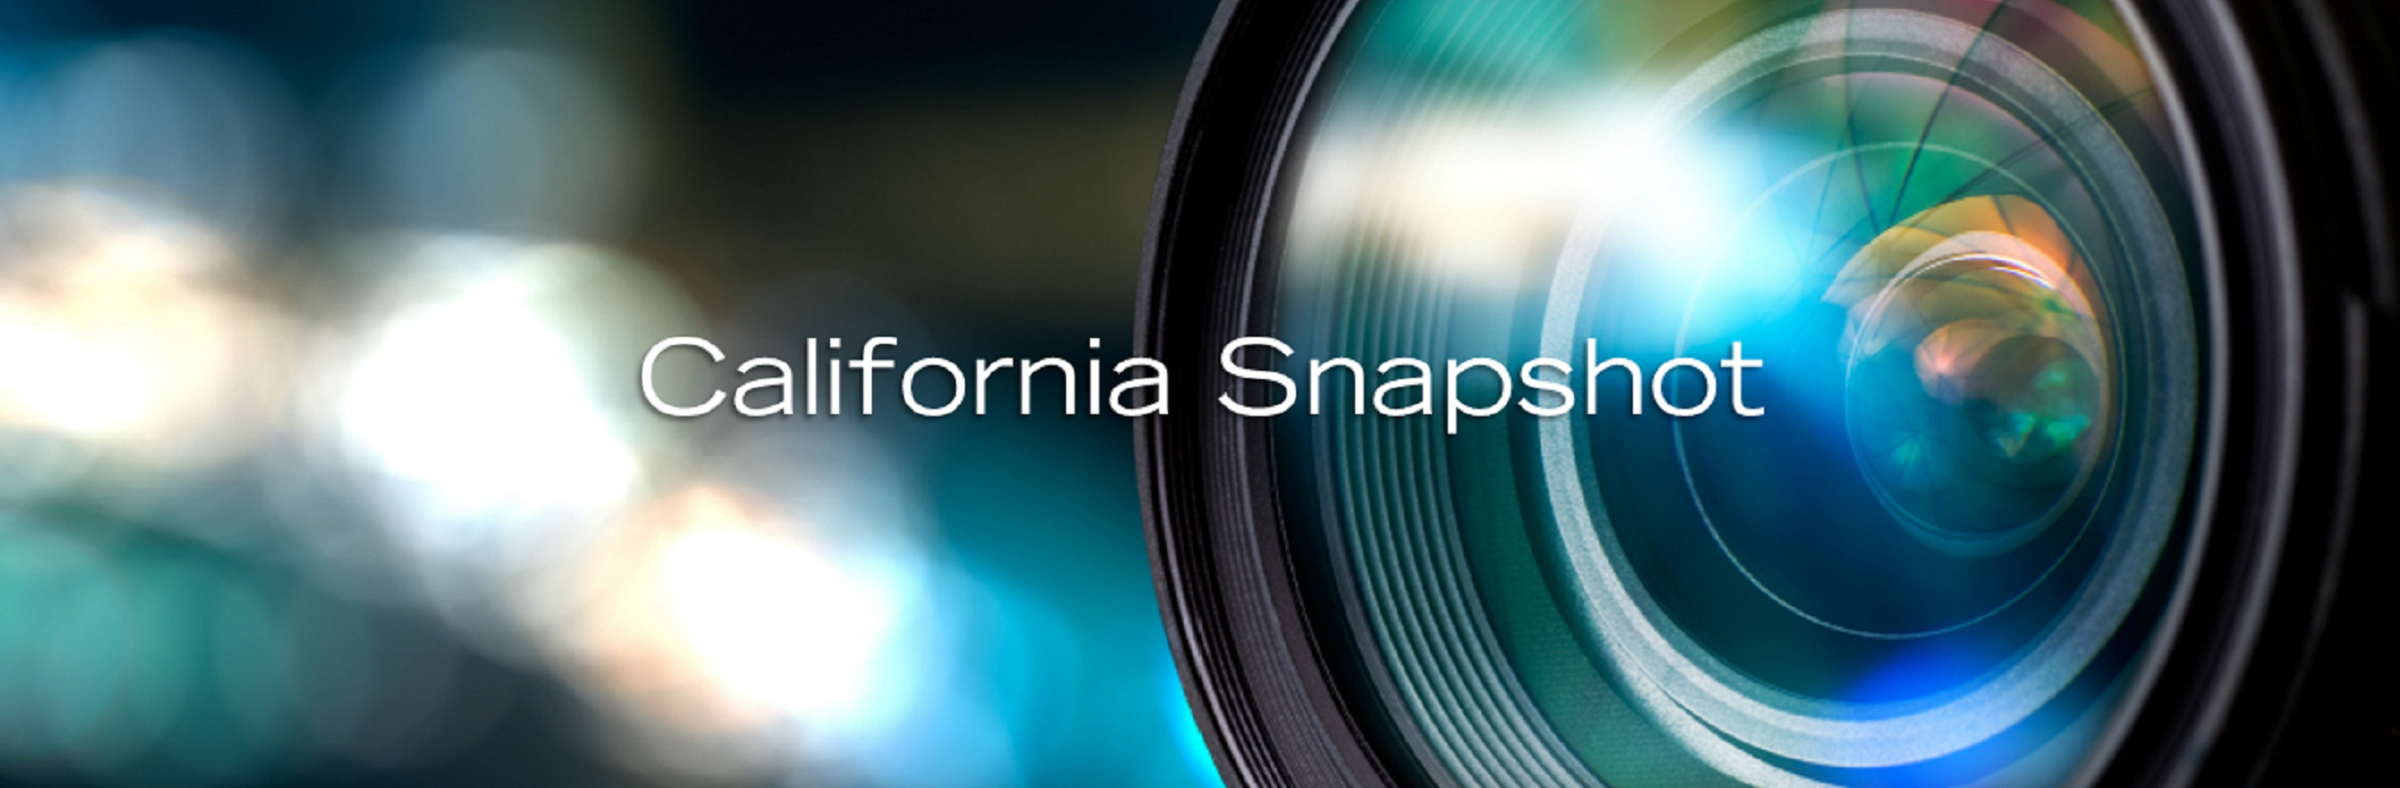 California Snapshot 